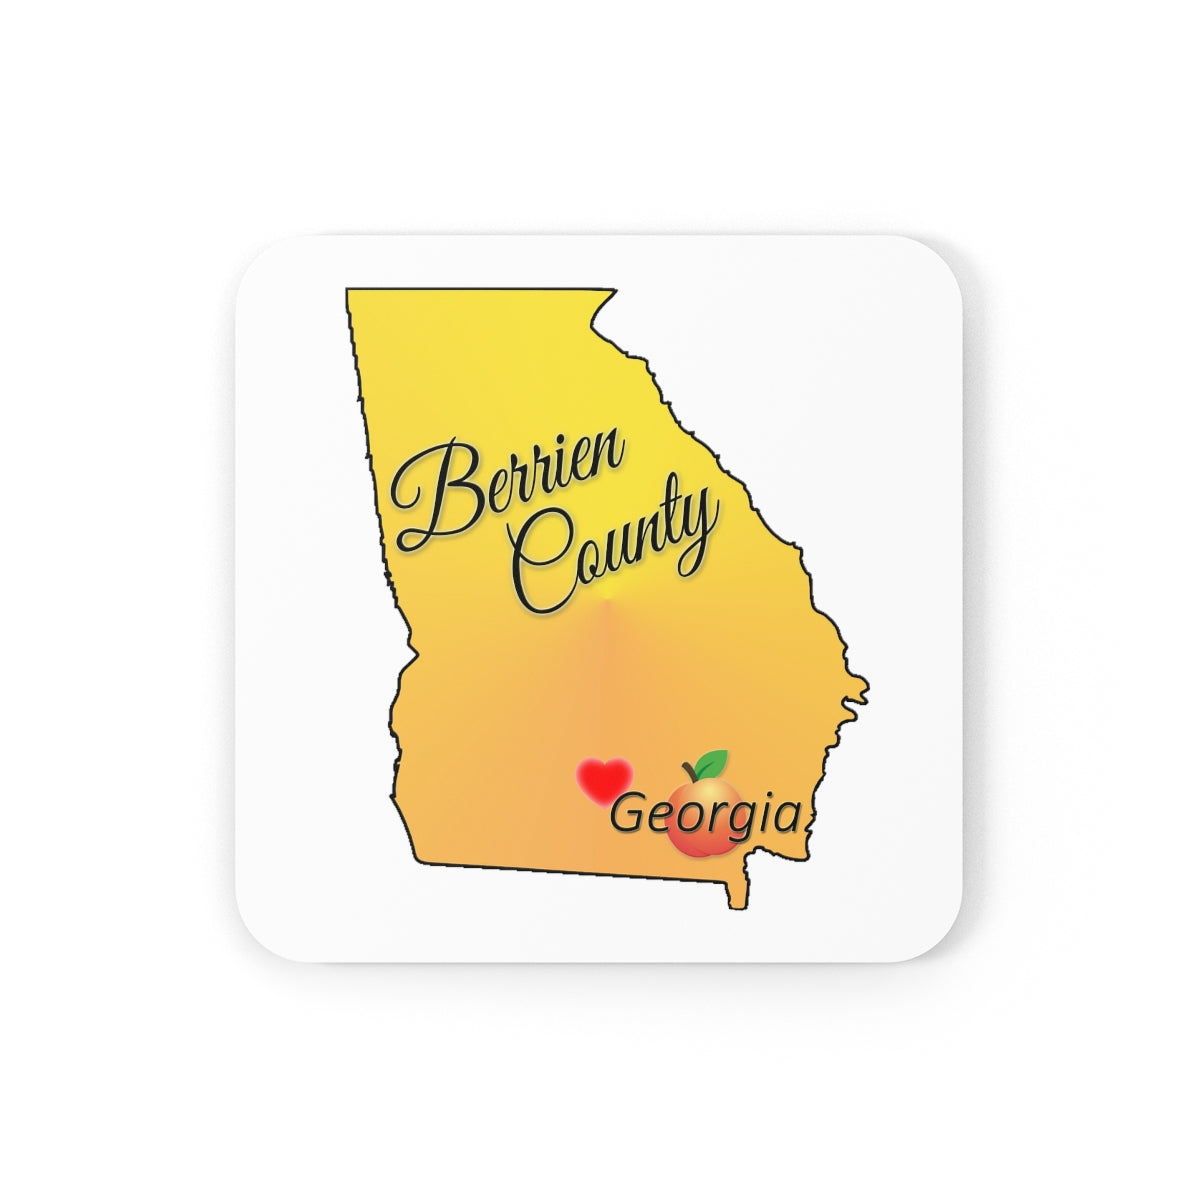 Berrien County Georgia Corkwood Coaster Set